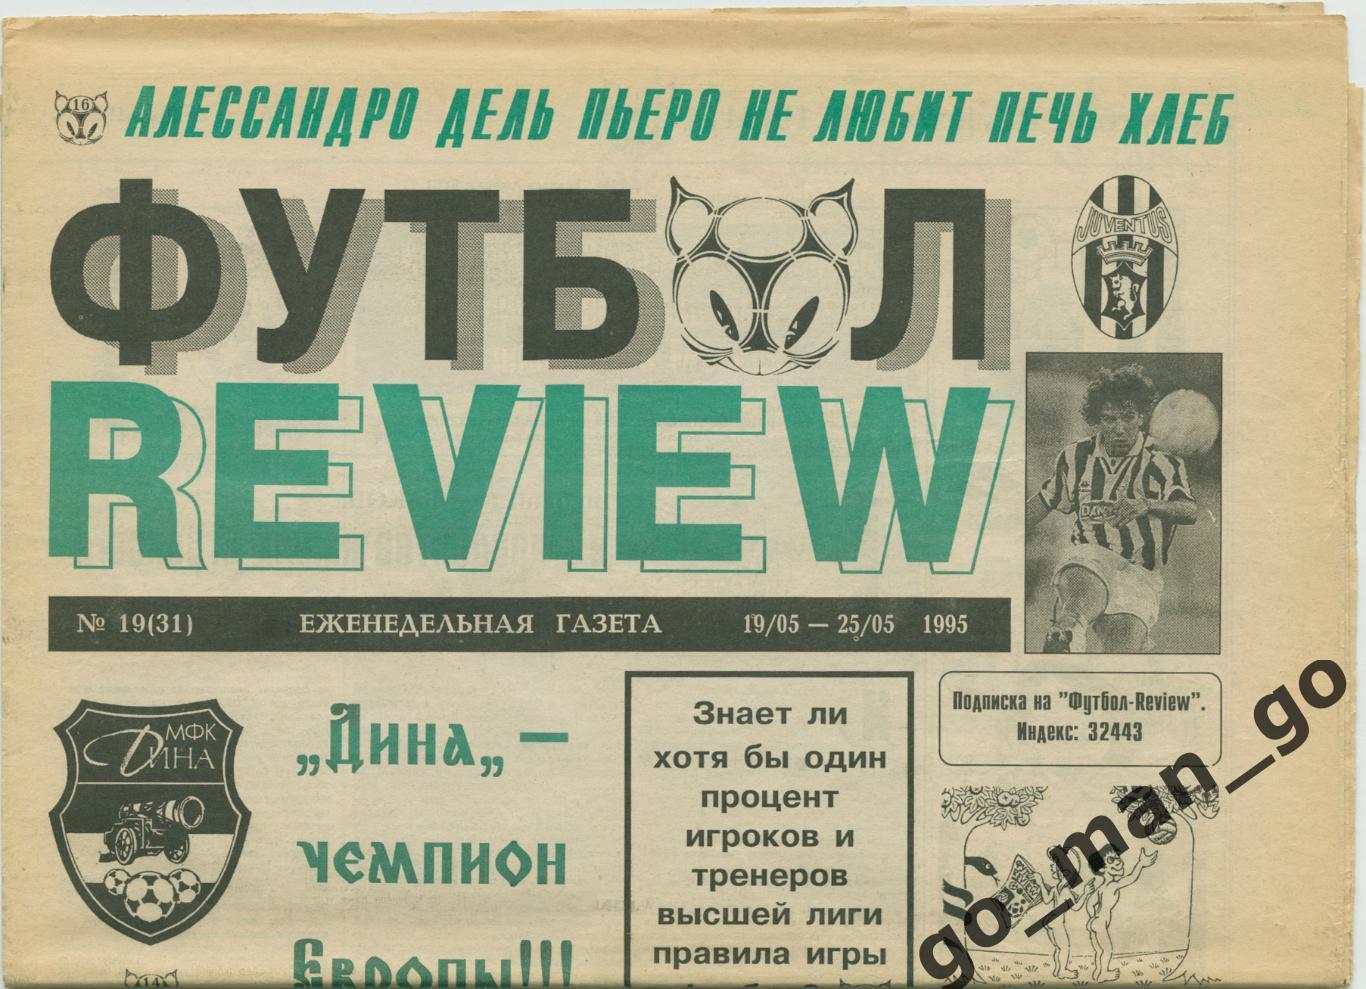 Еженедельник Футбол-Review (Футбол-Ревю), 19-25.05.1995, № 19.